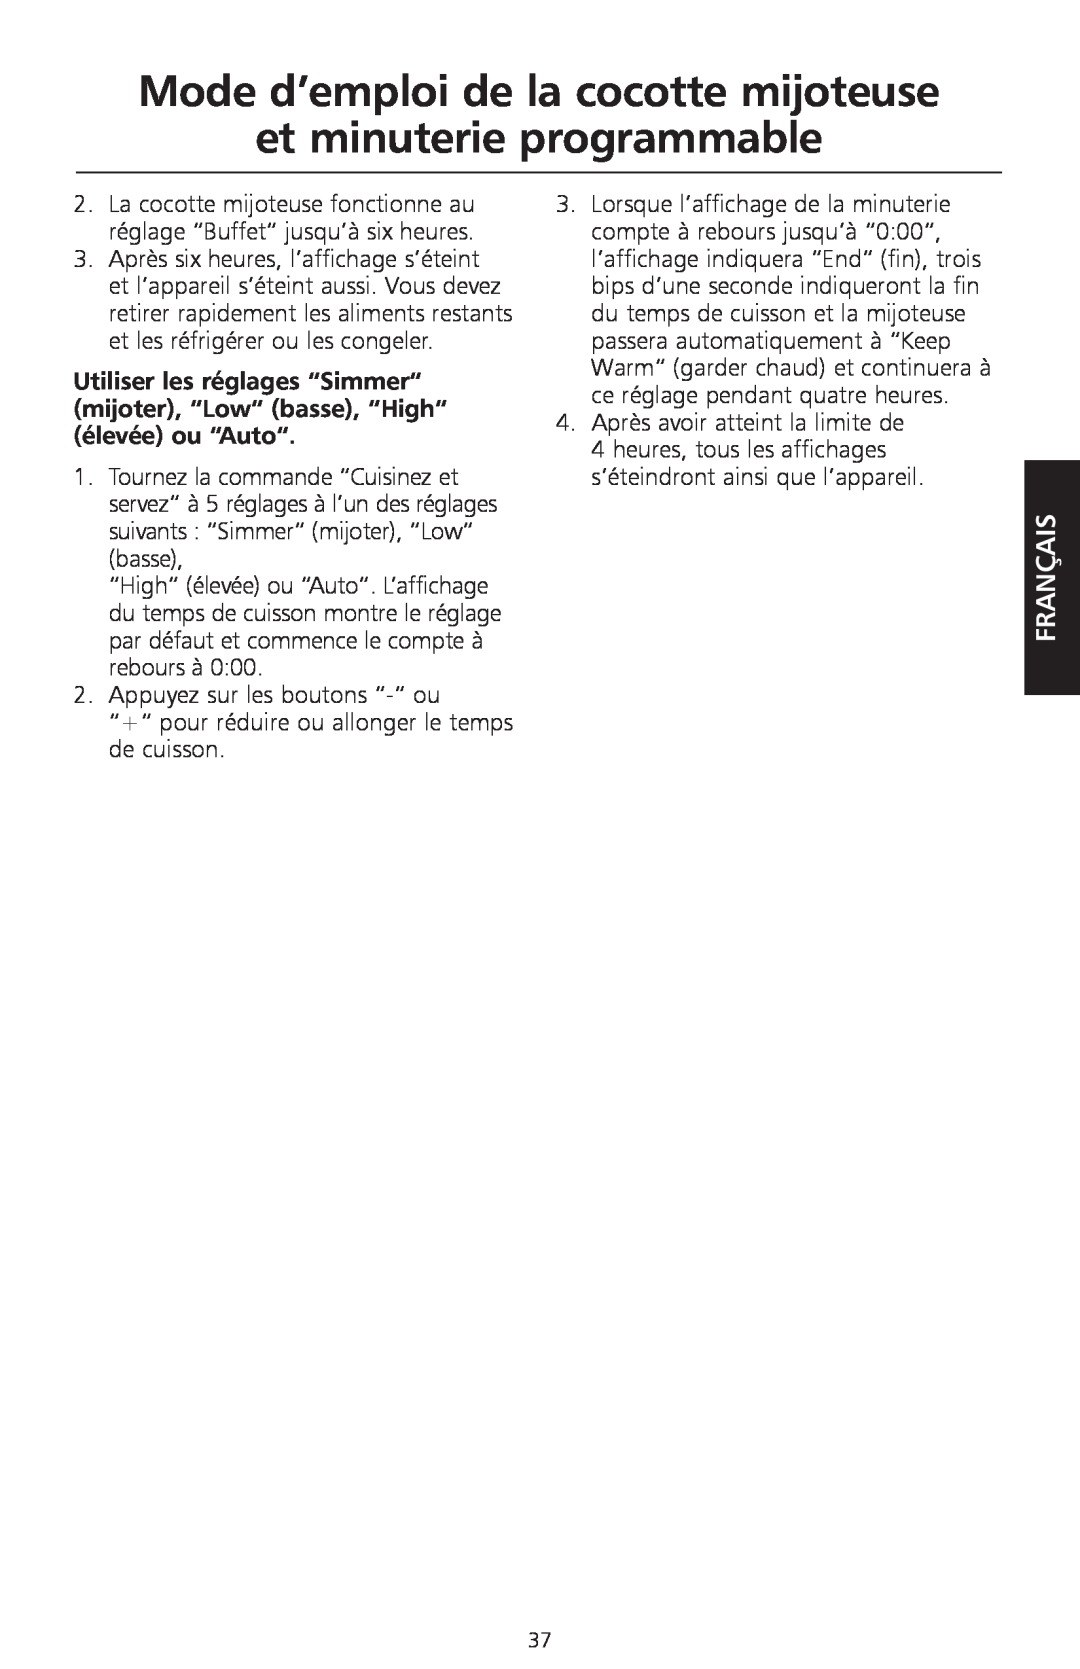 KitchenAid KSC700 manual Mode d’emploi de la cocotte mijoteuse, et minuterie programmable, Français 